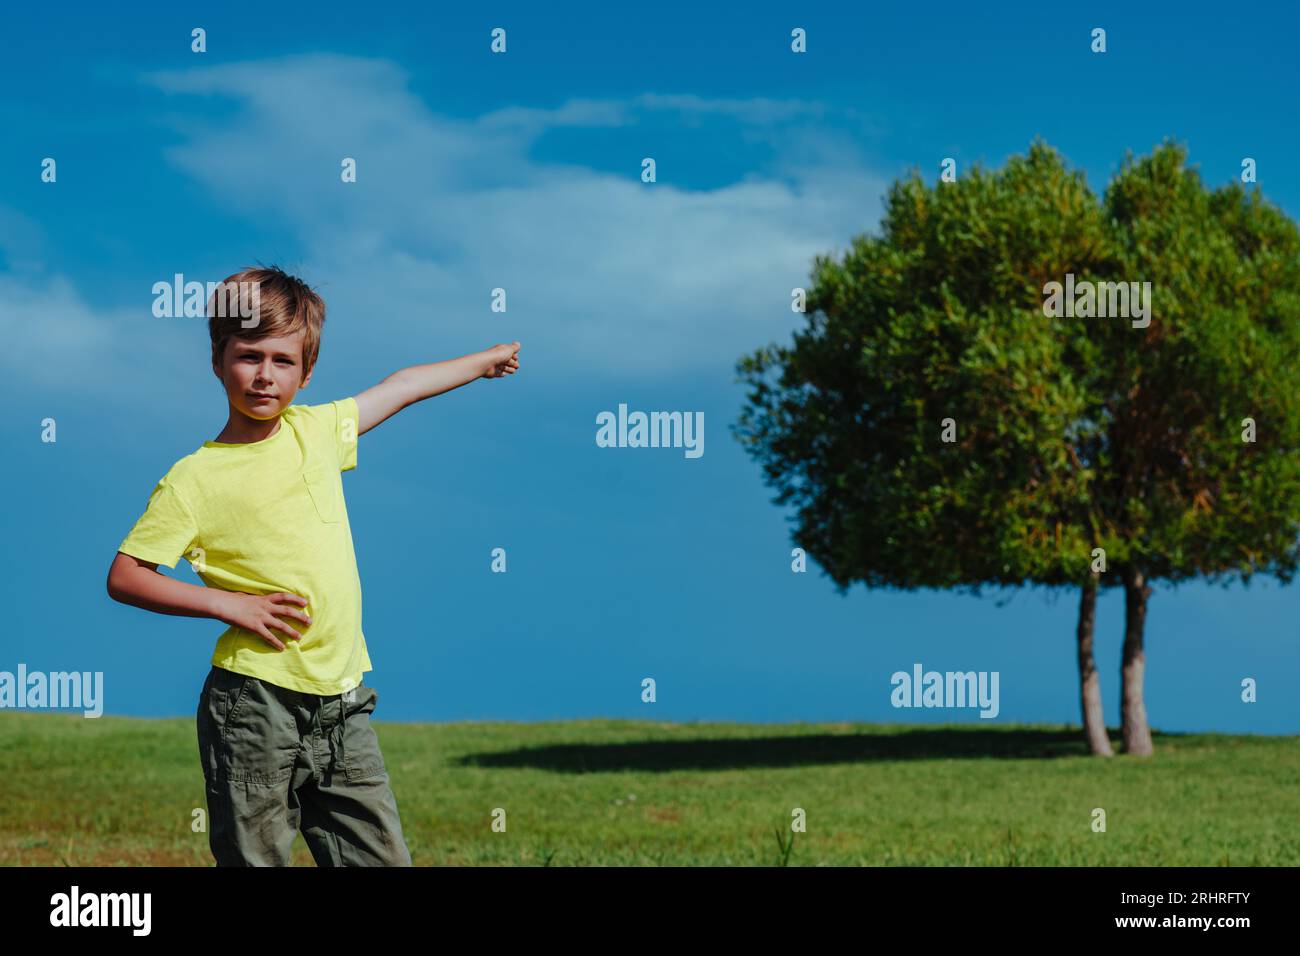 Boy pointe vers l'arbre lors d'une journée ensoleillée, concept d'écologie Banque D'Images